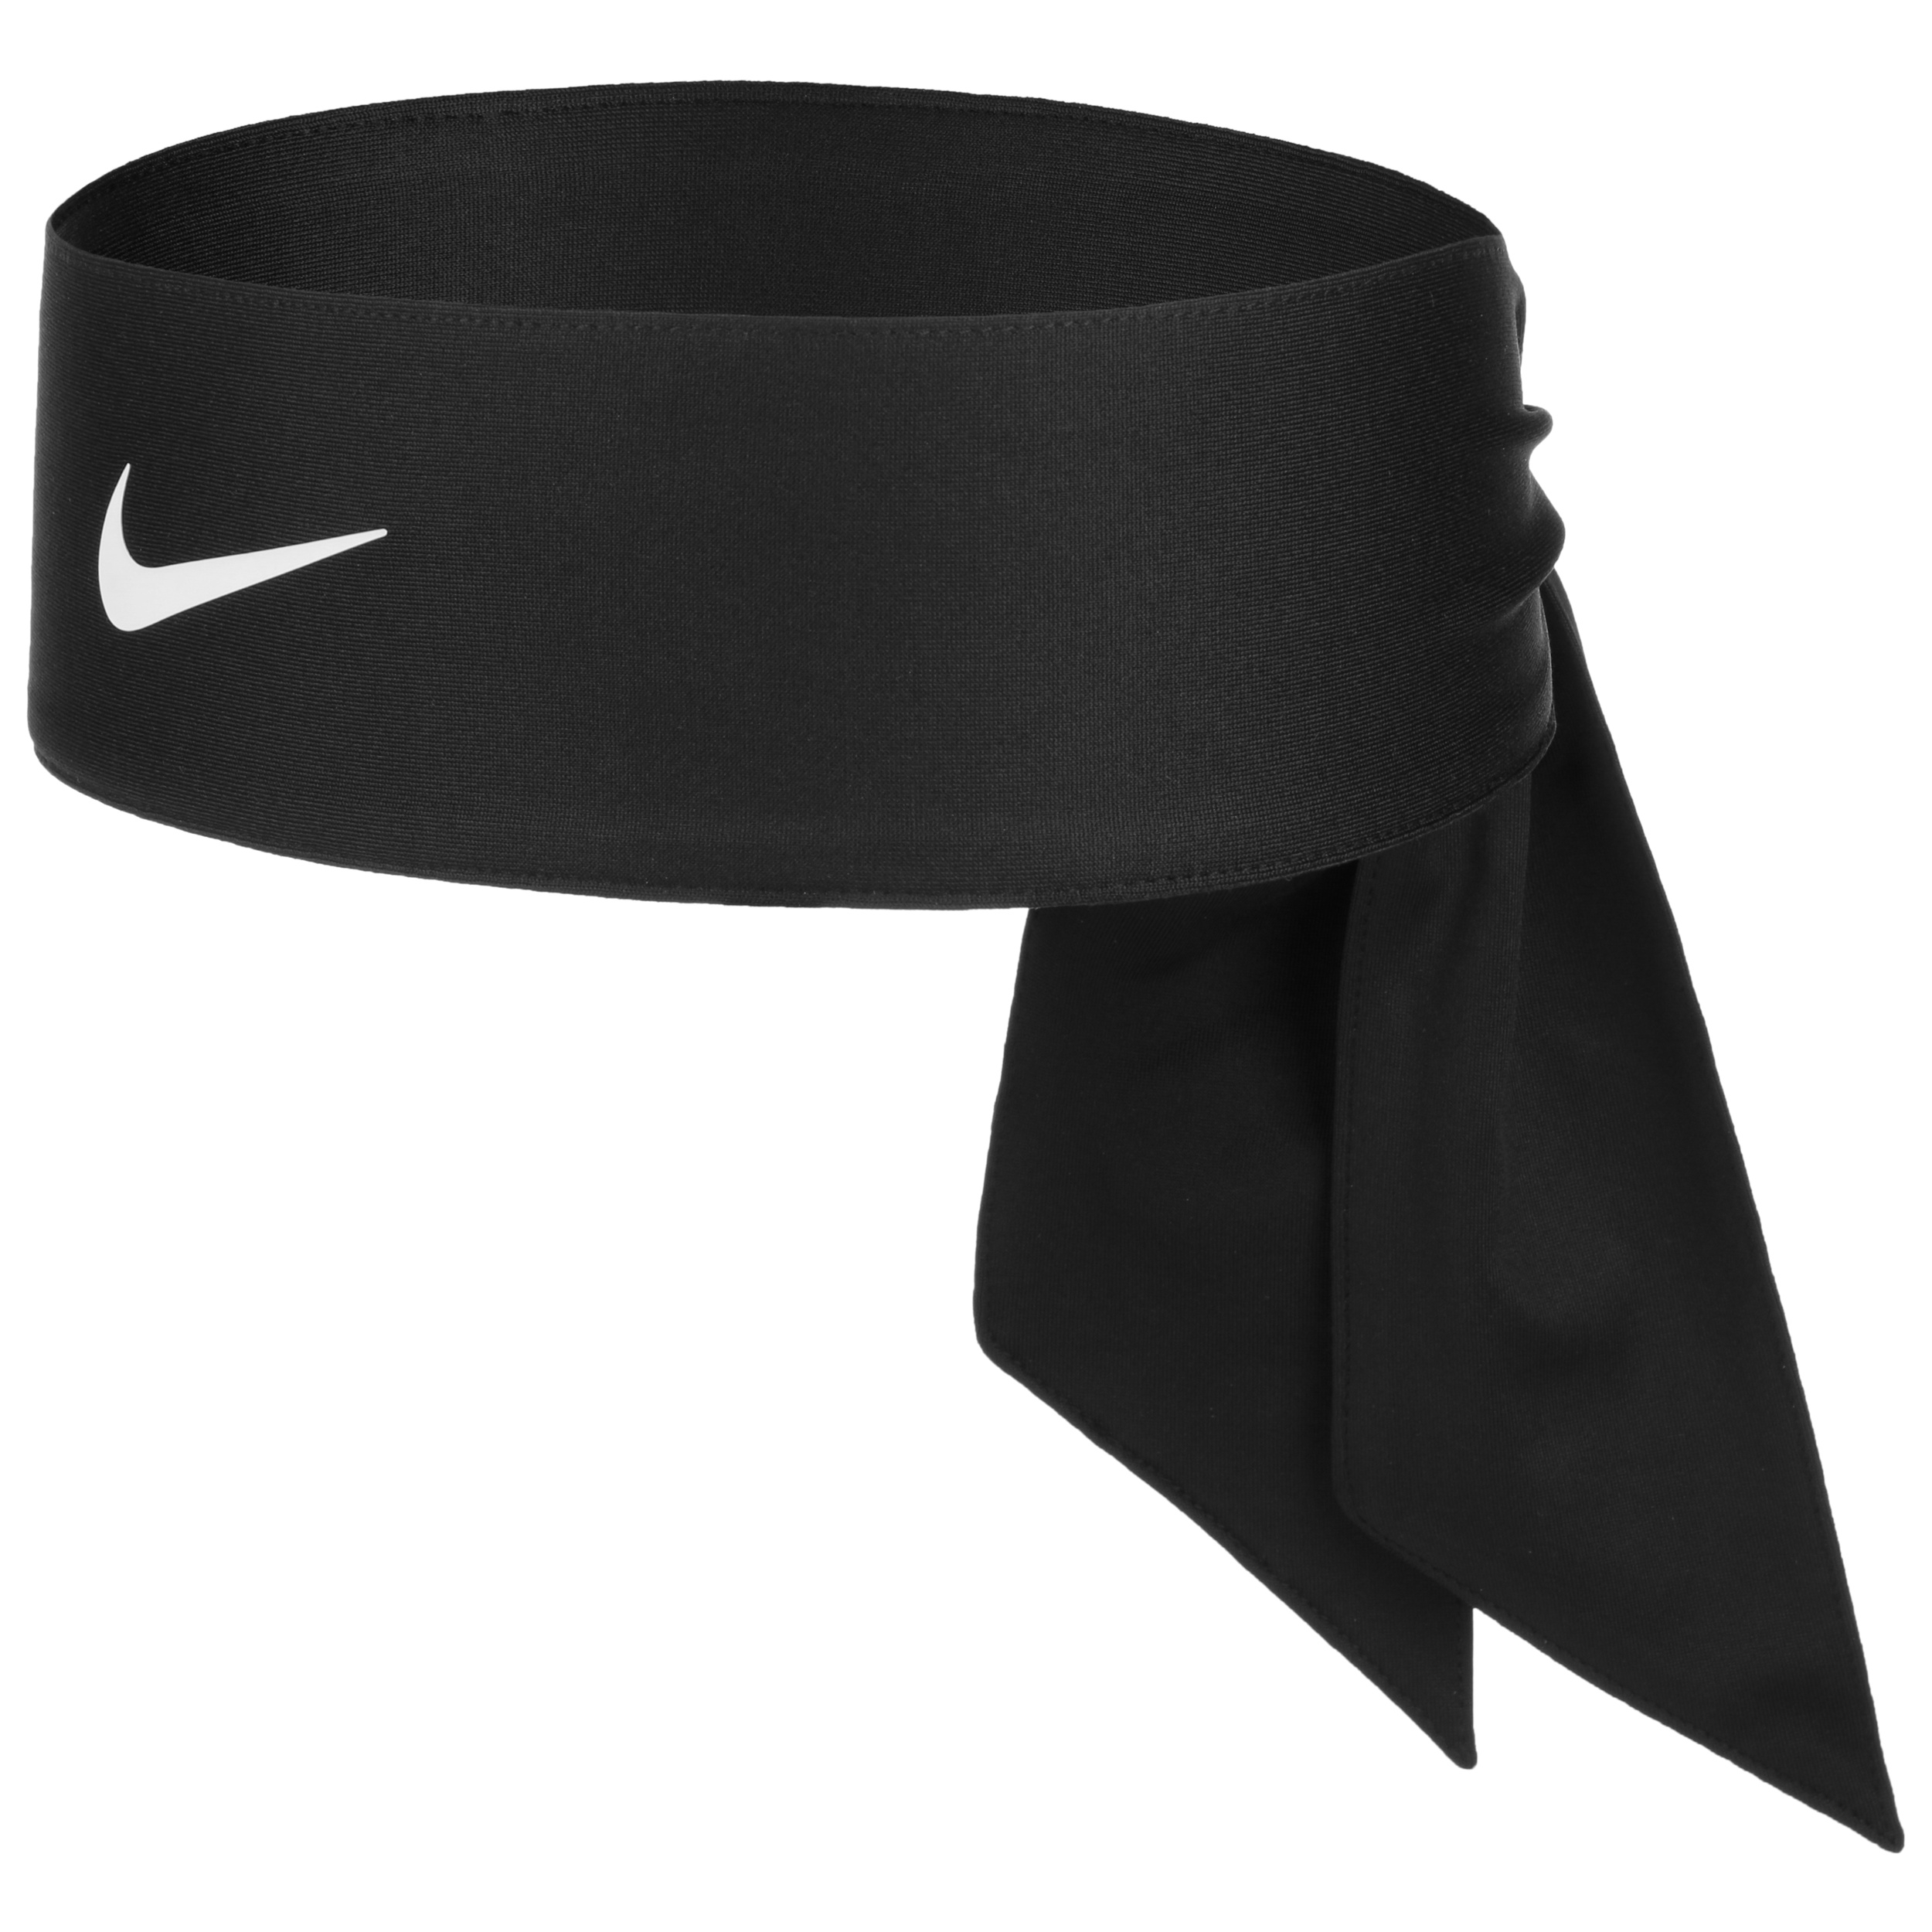 Cinta para la Cabeza Head Tie 4.0 by Nike - 19,95 €